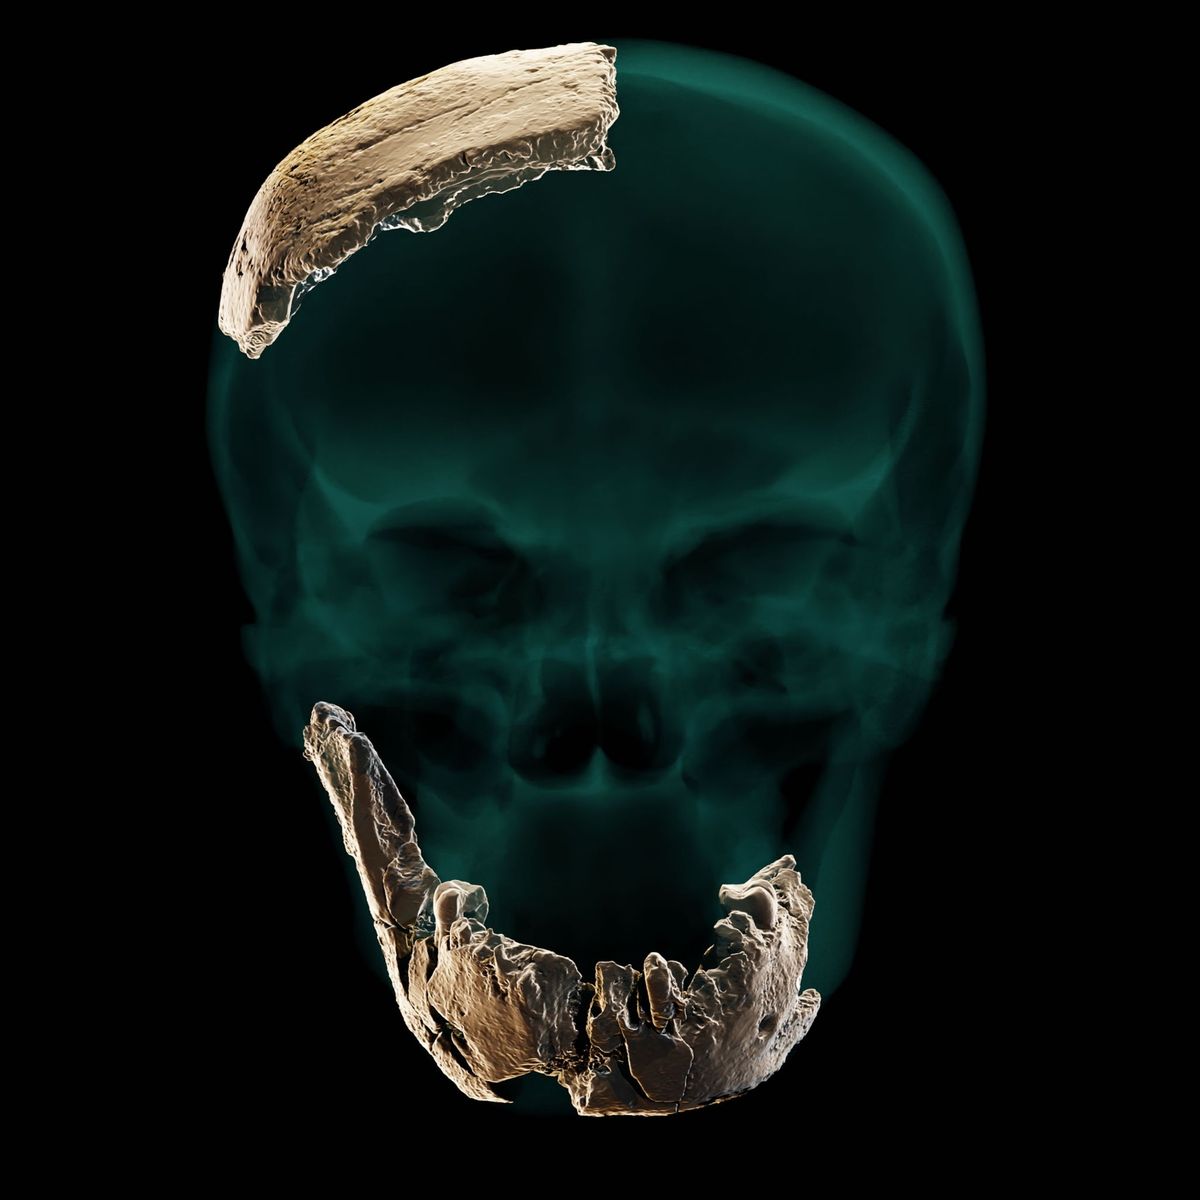 Onderzoekers hebben de gefragmenteerde resten van een schedel uit de steengroeve van Nesher Ramla gebruikt om een virtuele reconstructie te maken van de vroege mensensoort die in een relatief recente periode in deze regio leefde maar nog zeer archasche trekken vertoonde waaronder het vrijwel ontbreken van een kin